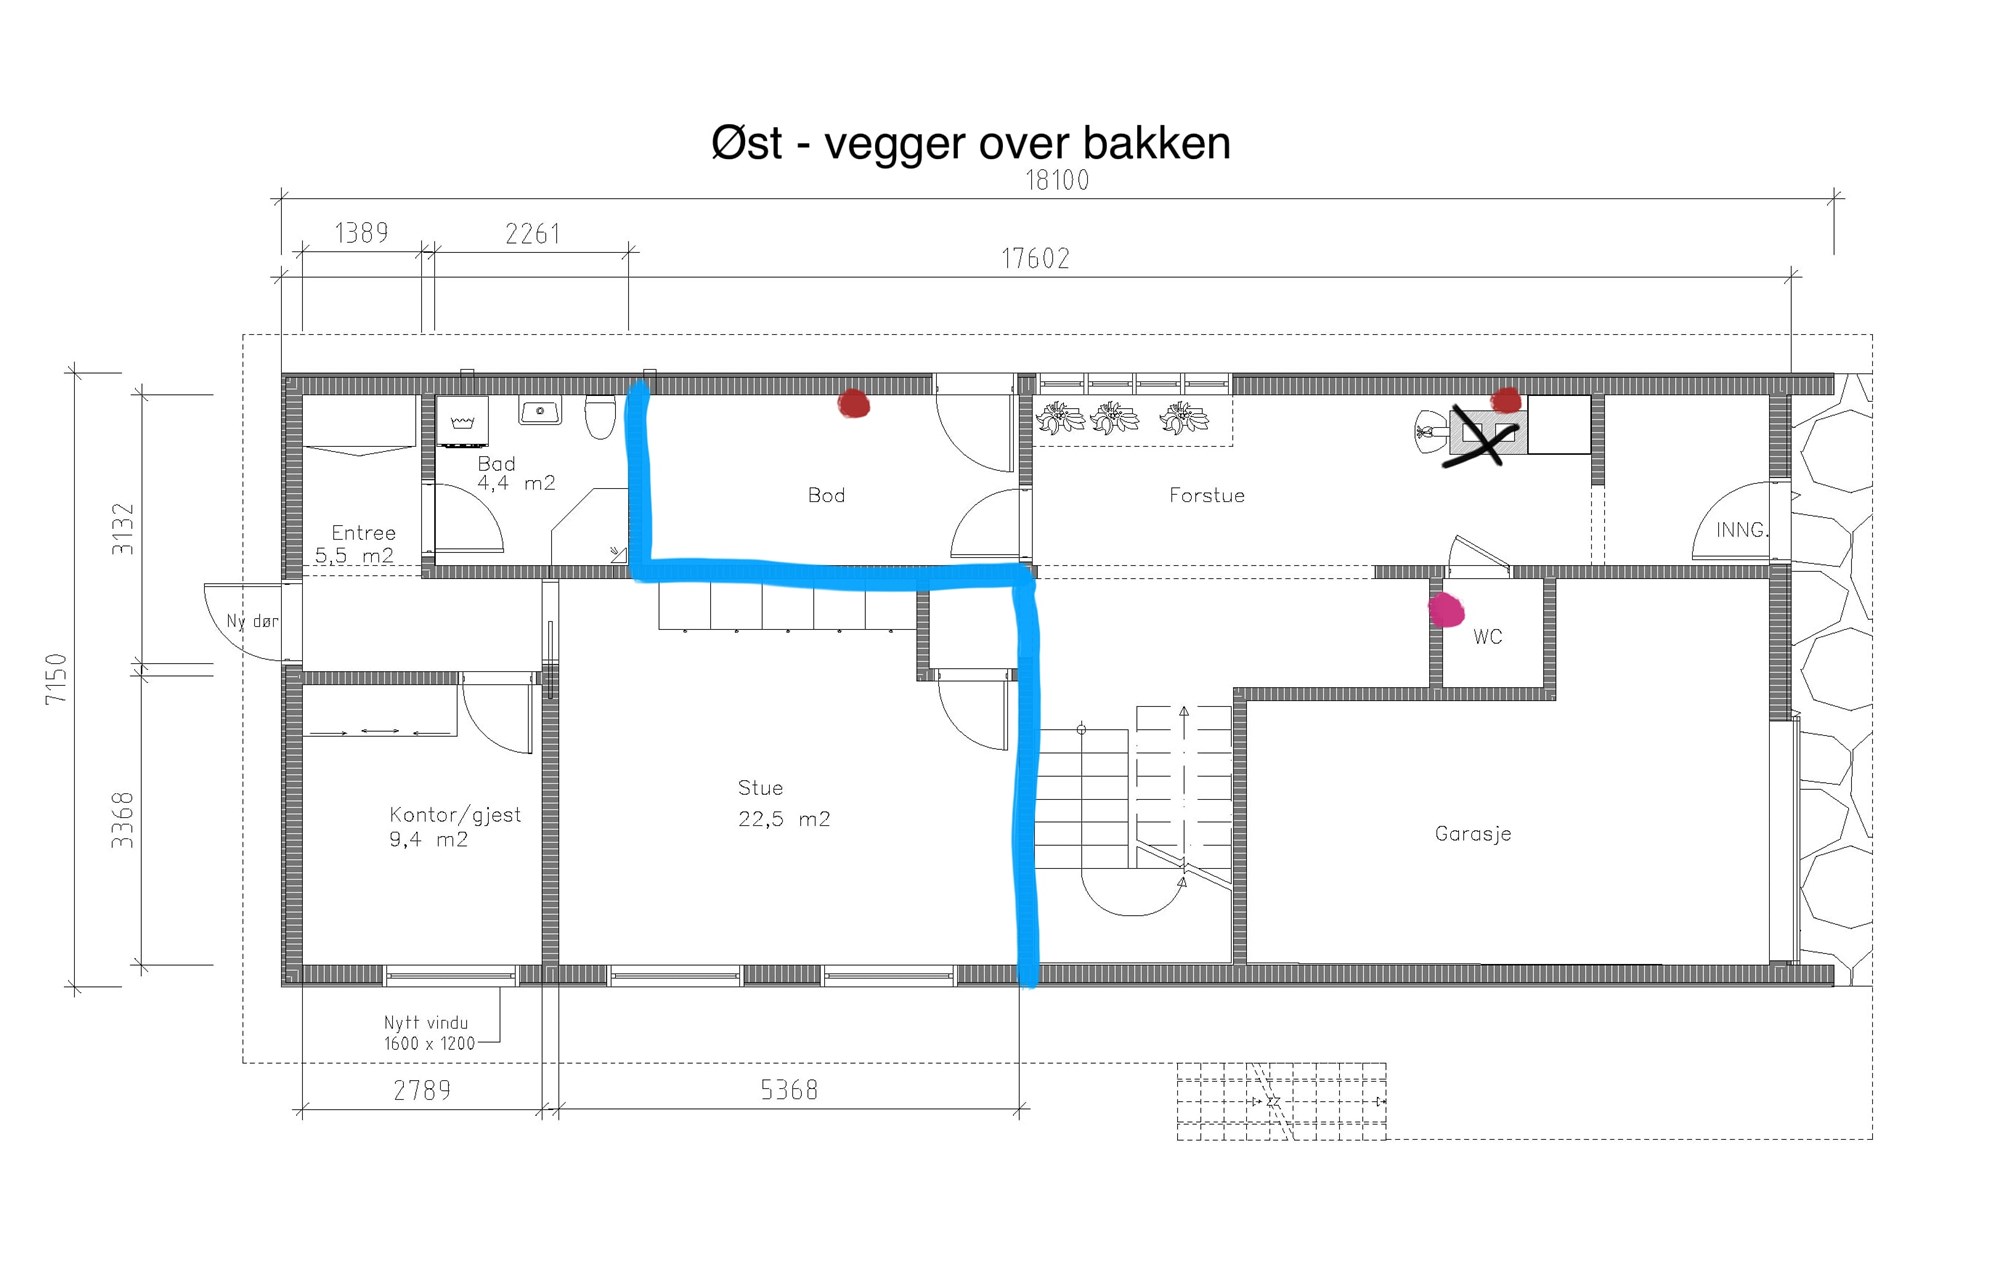 Etablering av nye ventilasjonsluker - teknisk rom og hall. Plassering - Plan_underetasje.jpg - EdleB